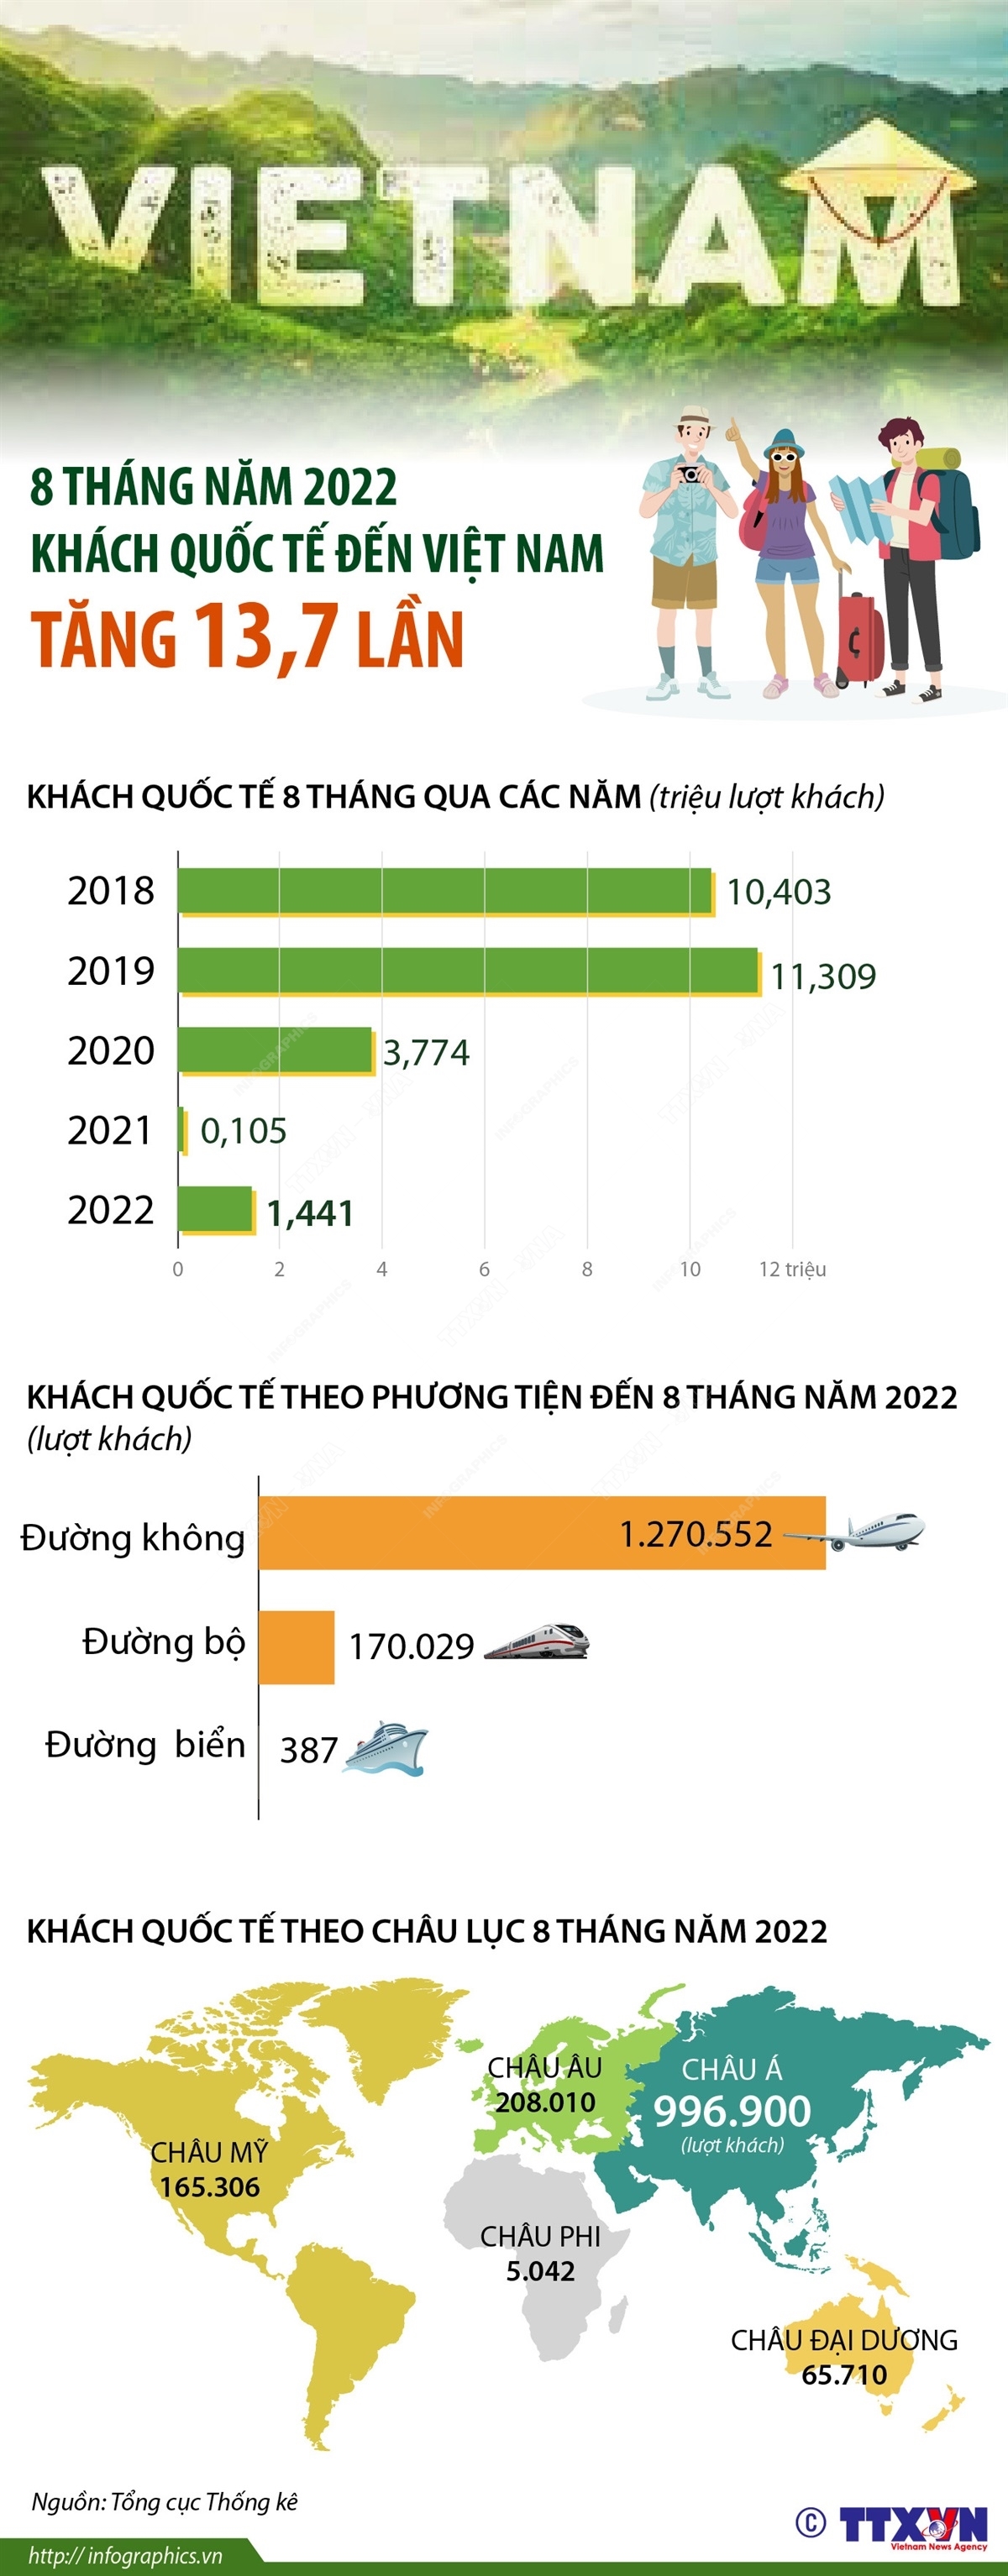 8 tháng qua, khách quốc tế đến Việt Nam tăng 13,7 lần